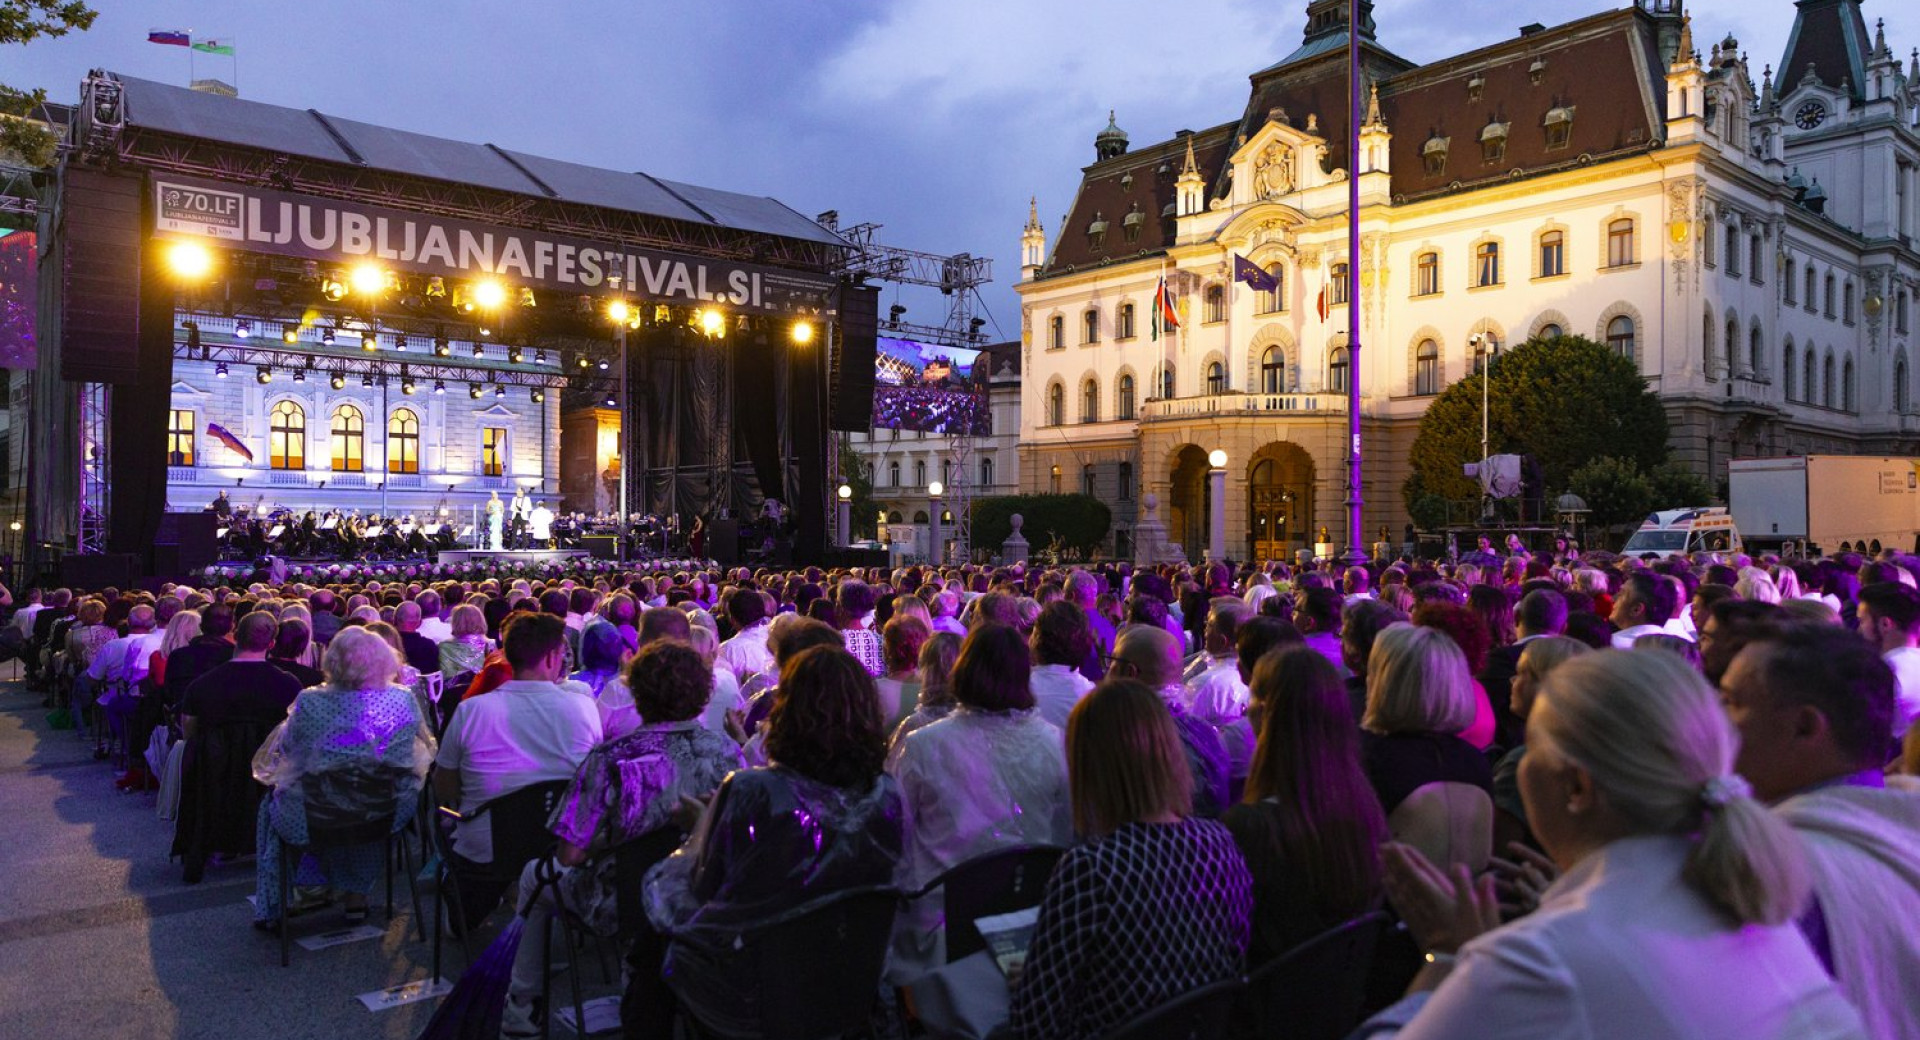 Utrinek s slovesnega odprtja 70. Ljubljana Festivala leta 2022; oder z nastopajočimi in gledalci na Kongresnem trgu v Ljubljani